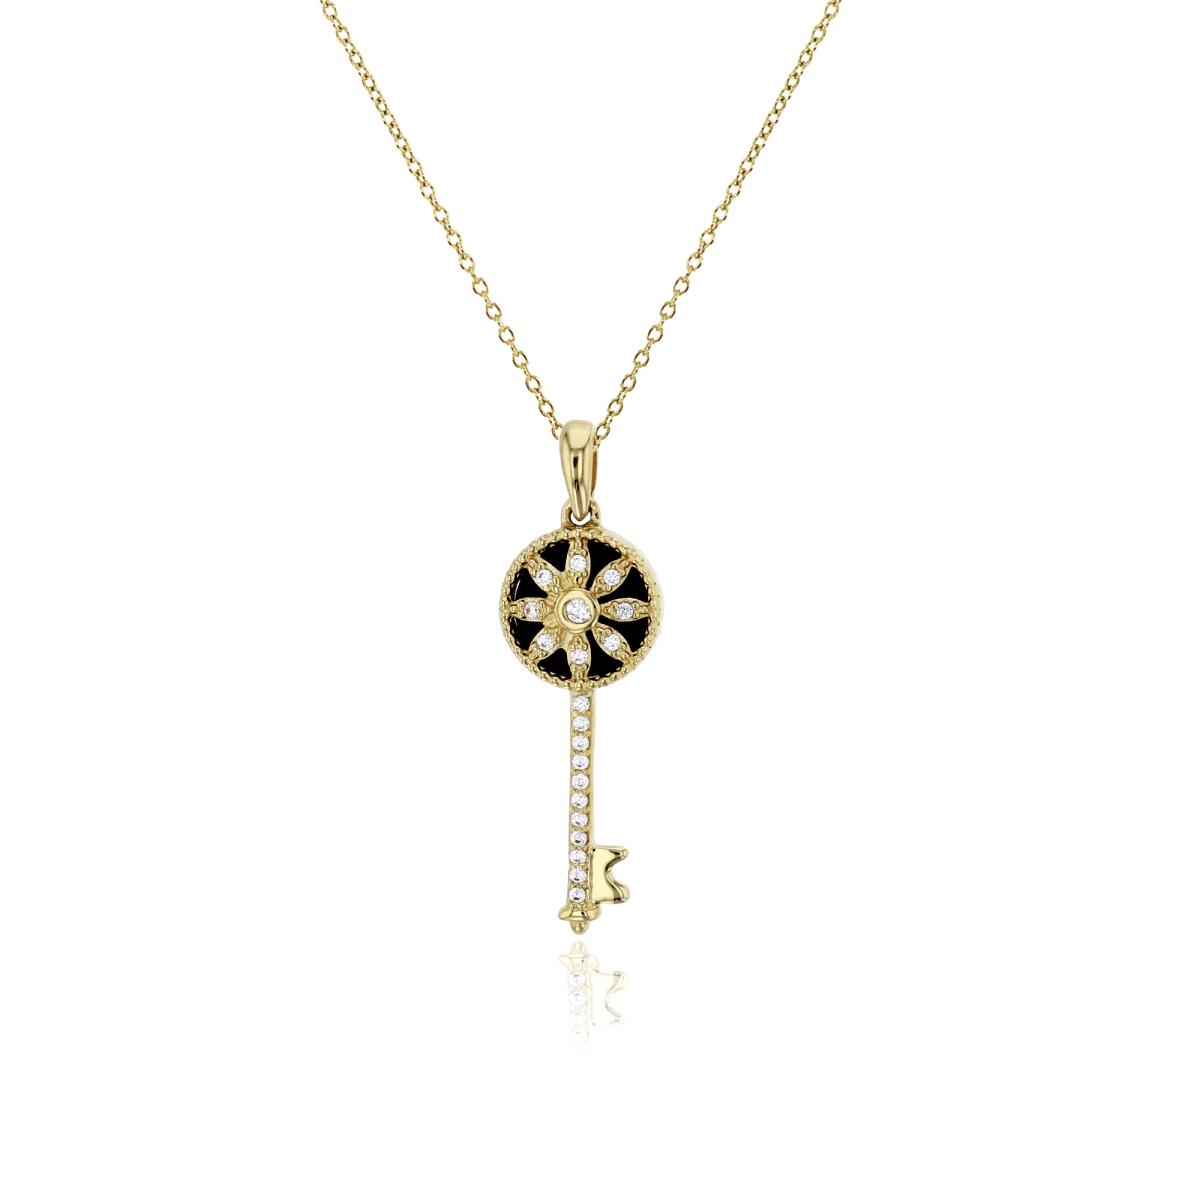 14K Yellow Gold Black Onyx & Clear CZ Flower Key 18" Necklace